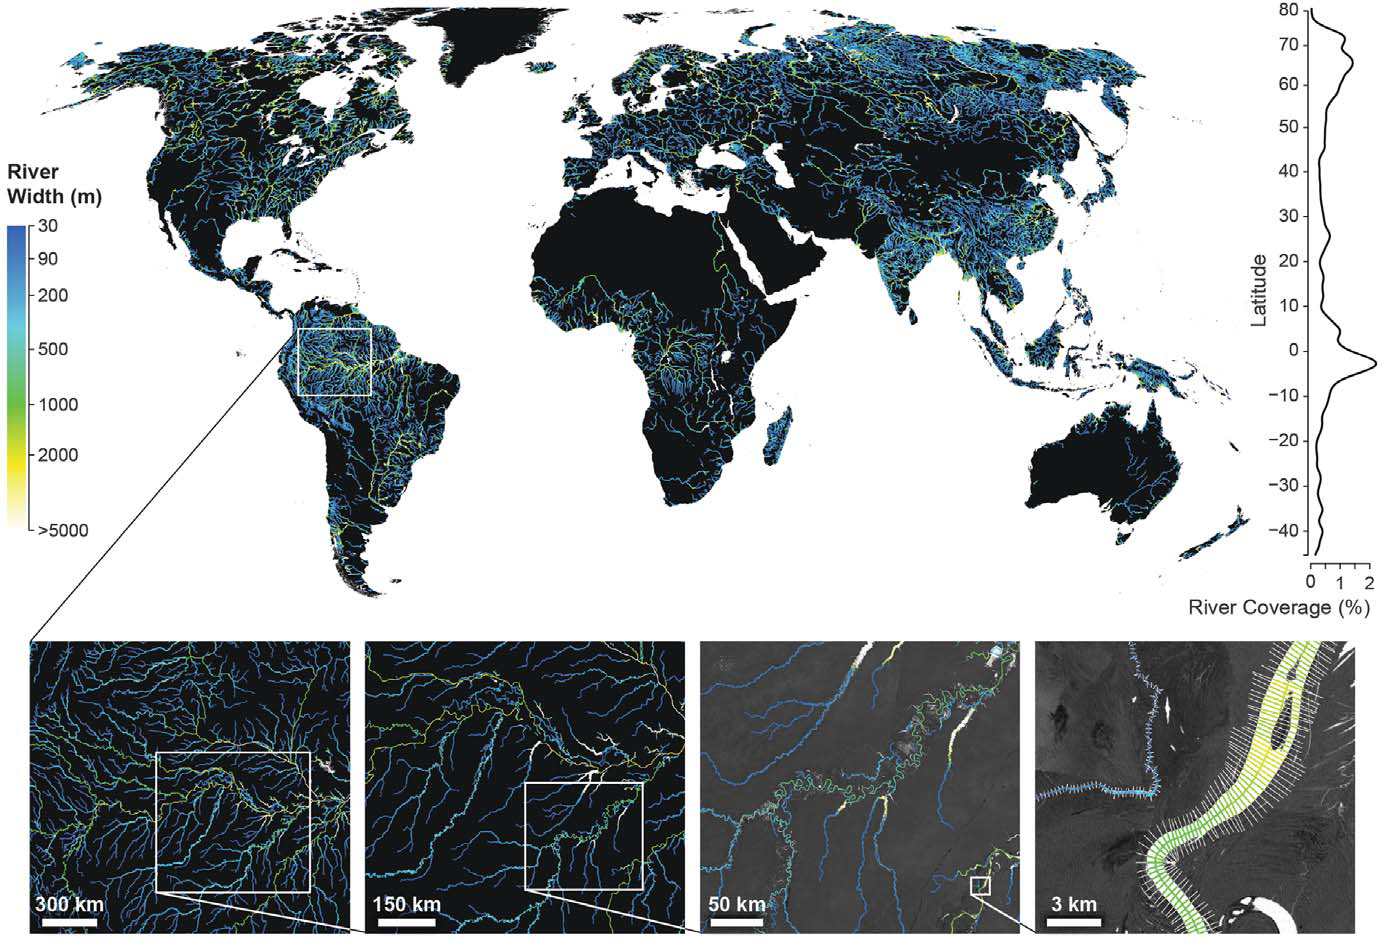 Szerokość największych rzek na Ziemi. W dolnej części grafiki, w powiększeniu pokazano jak ocena szerokości rzek wyglądała dla fragmentu Amazonki. Rys. Allen i Pavelsky, 2018.